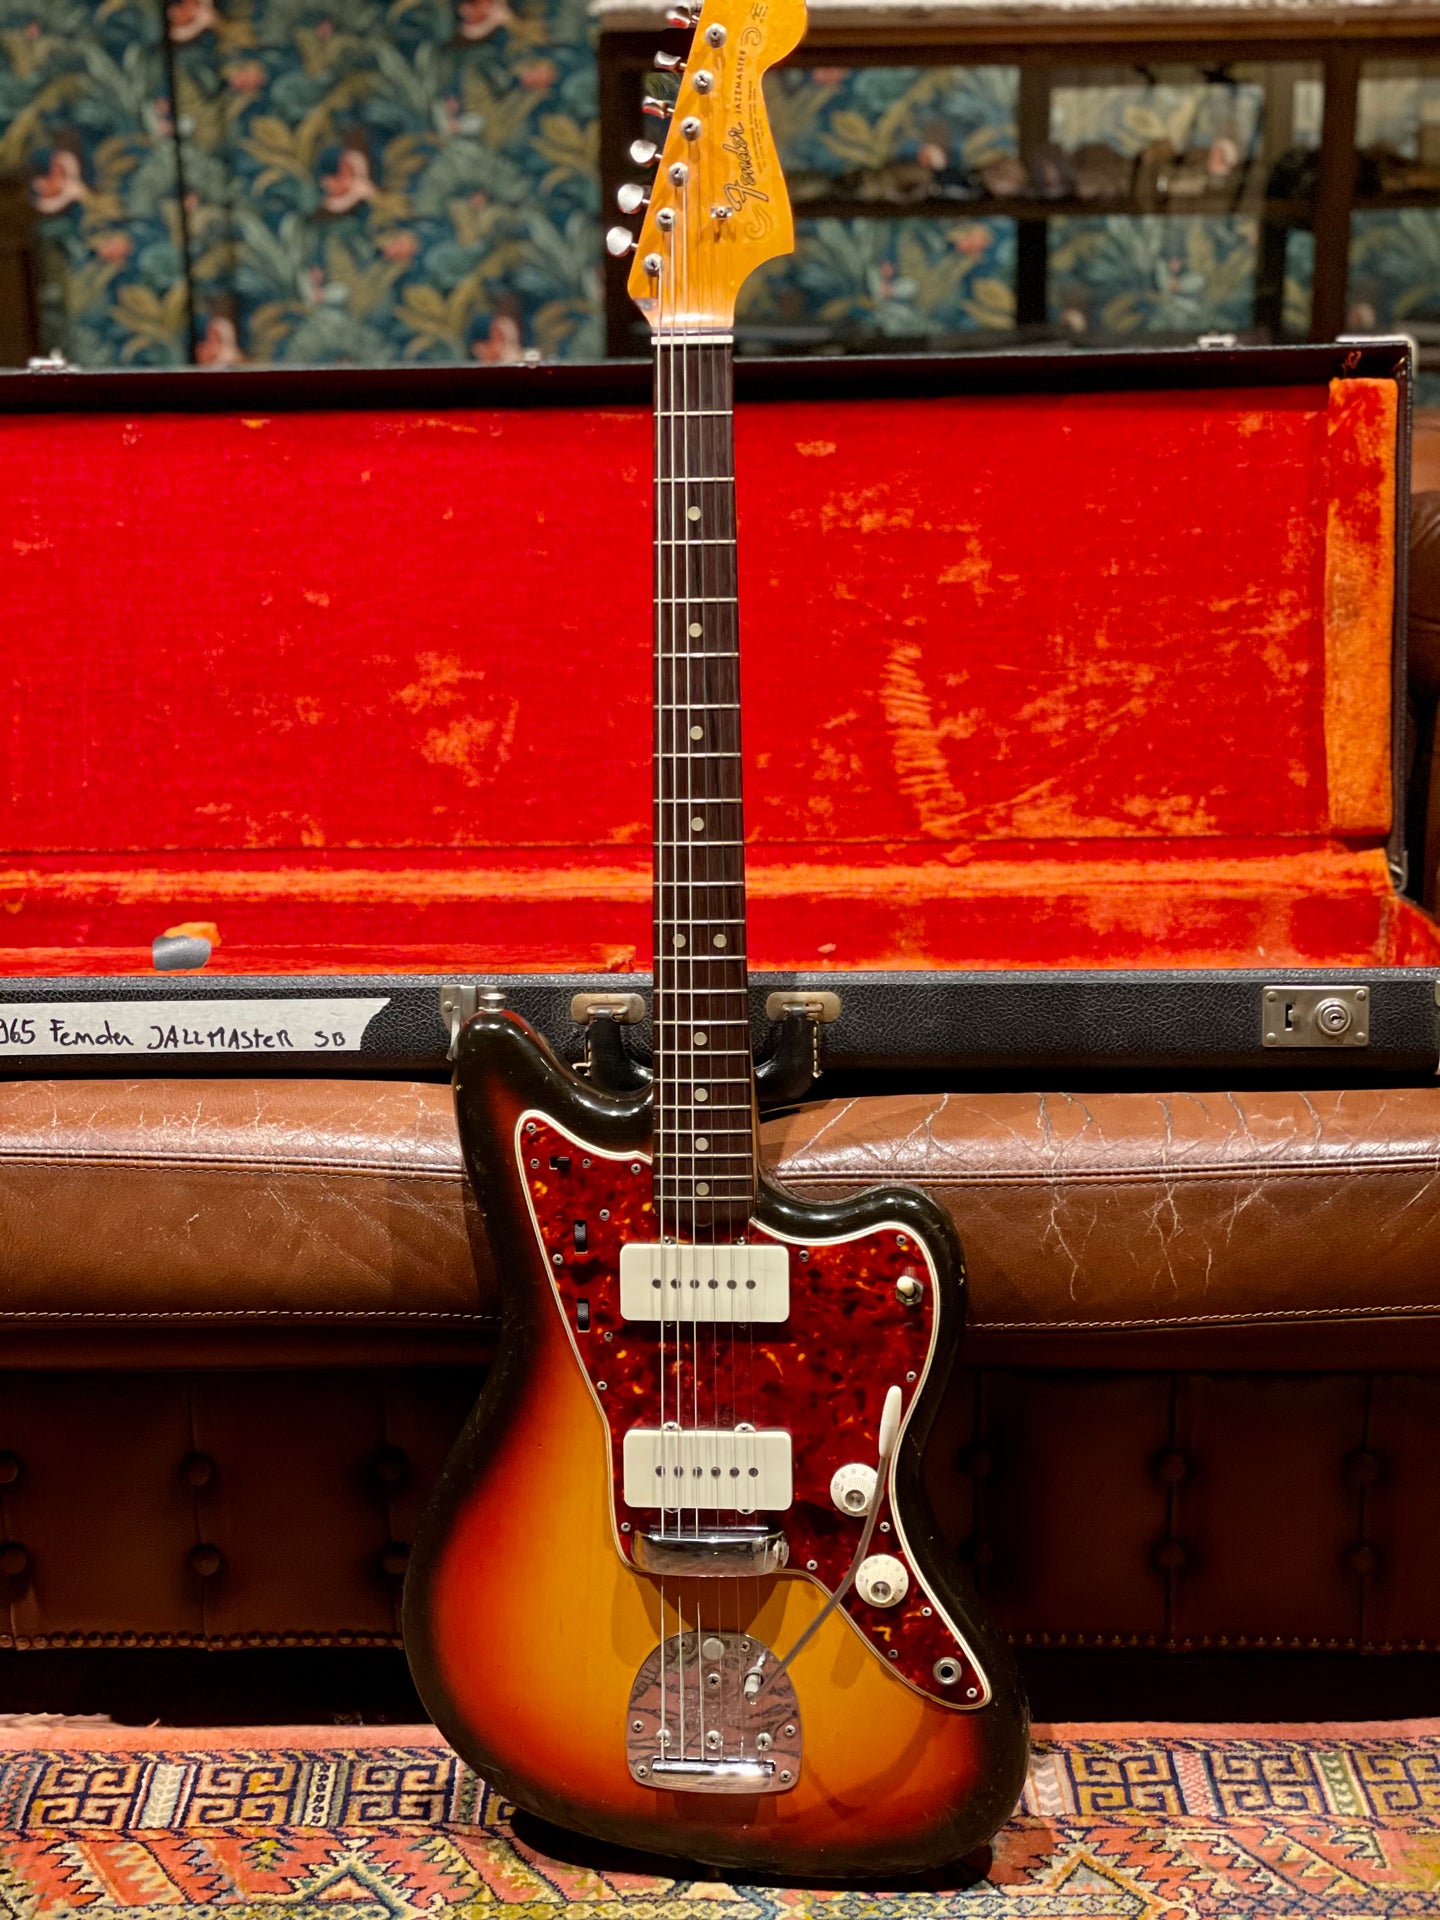 1965 Fender Jazzmaster L series